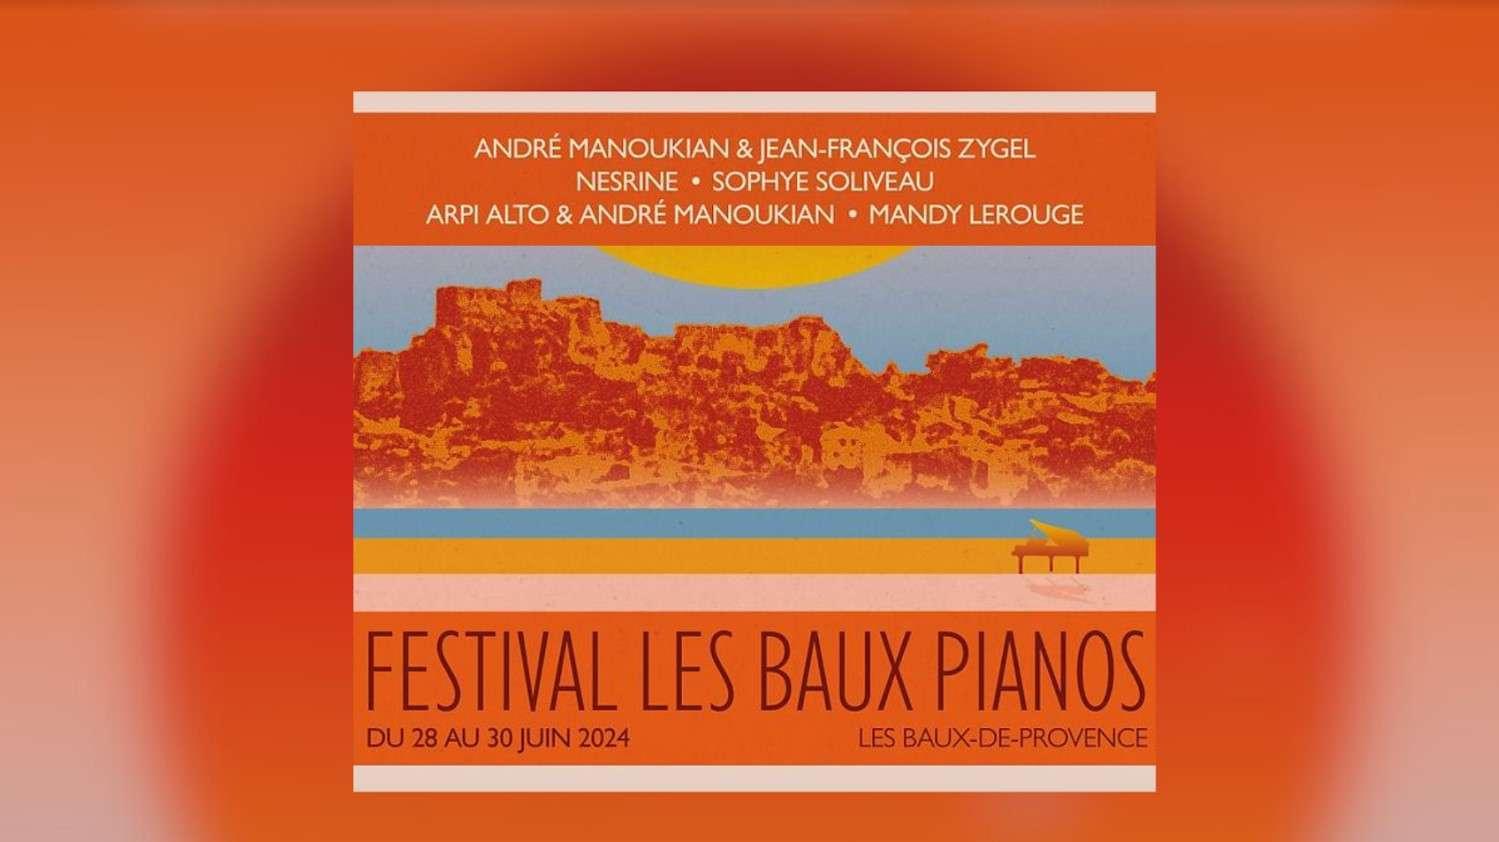 Festival les Baux pianos : "Un bel endroit nature qui va sonner en musique" André Manoukian